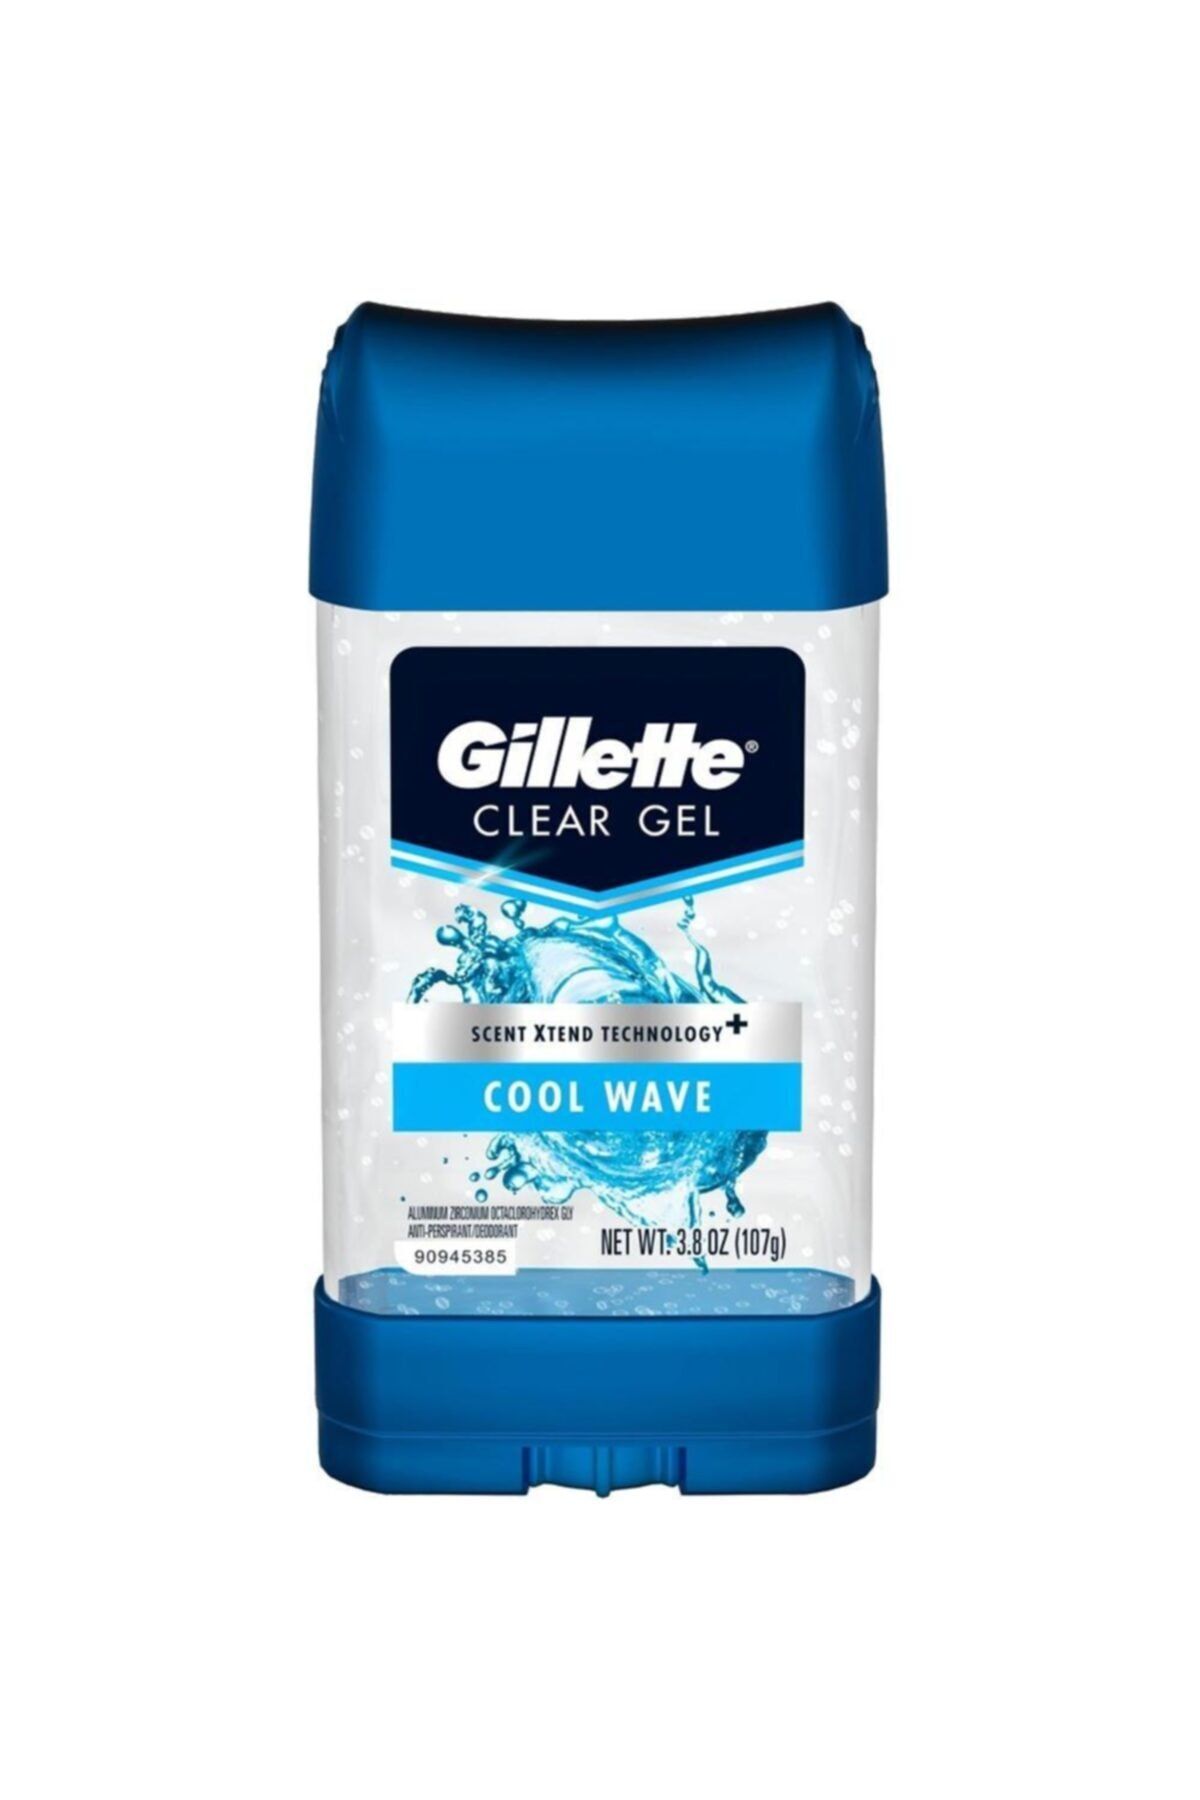 Gillette Cool Wave Antiperspirant Deodorant Jel 107gr